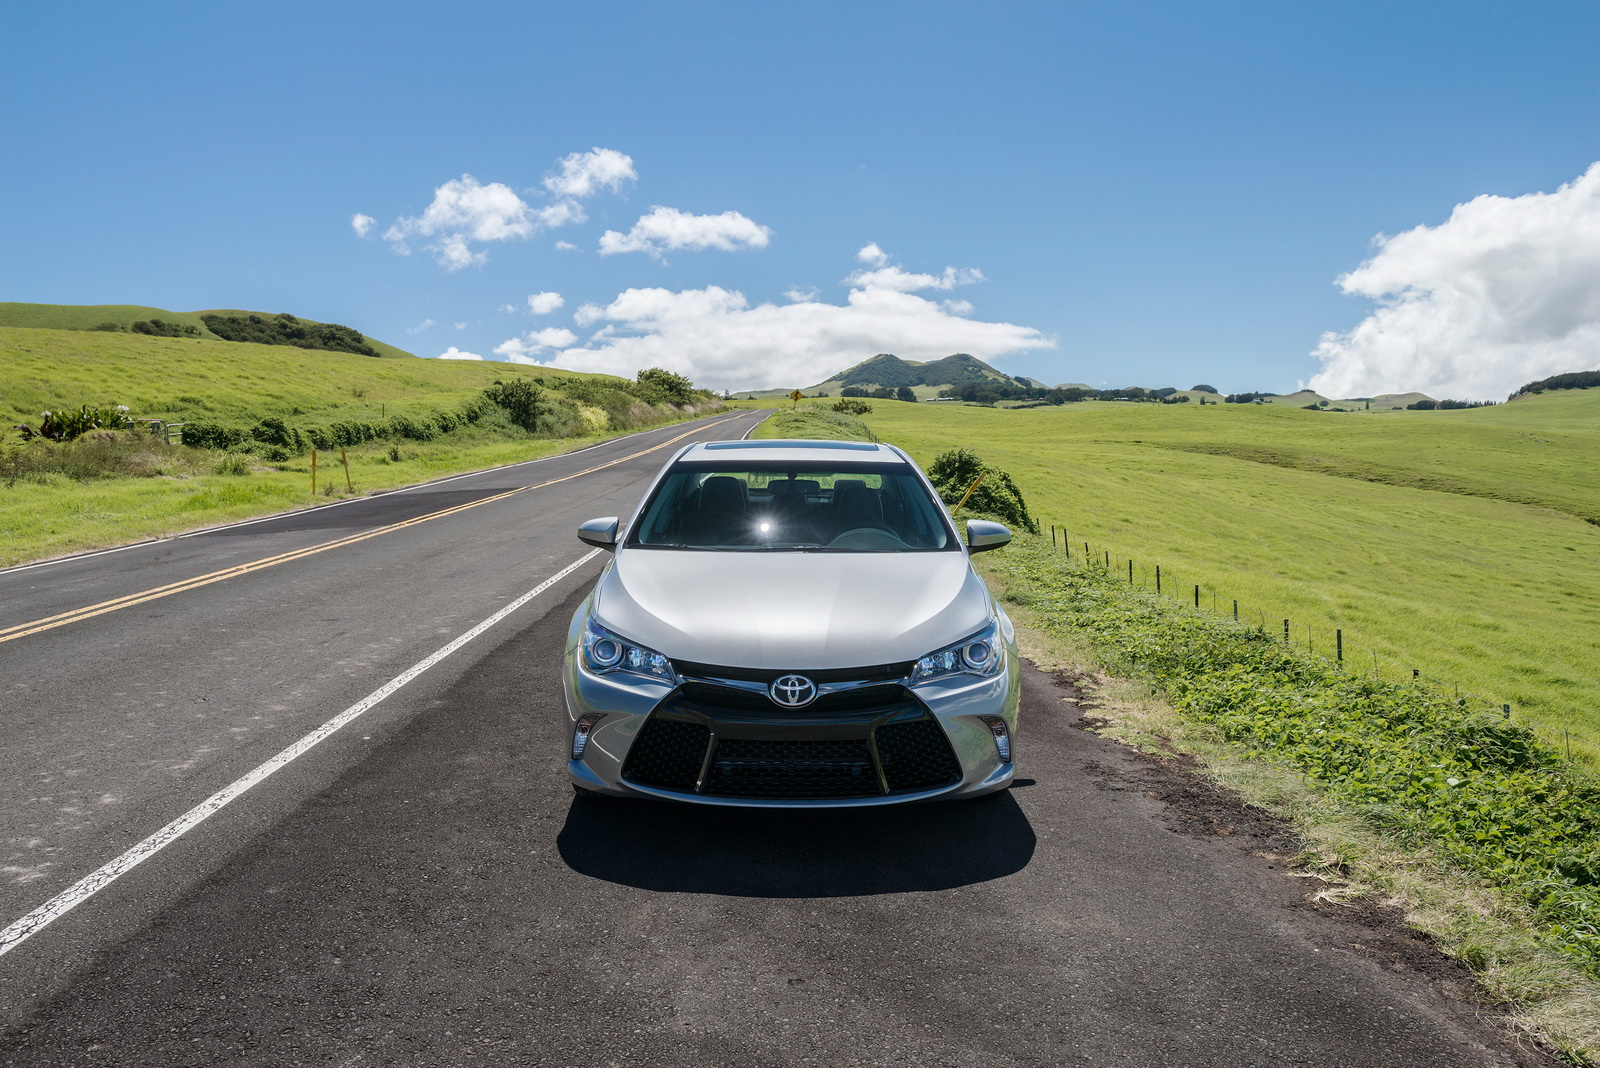 
Hãng Toyota đã chính thức tung ra phiên bản 2017 của mẫu sedan cỡ trung bán chạy Camry tại thị trường Mỹ. Bước sang phiên bản mới, Toyota Camry được bổ sung thêm nhiều trang thiết bị tiêu chuẩn. Trong khi đó, giá bán của Toyota Camry 2017 không hề thay đổi so với trước.
